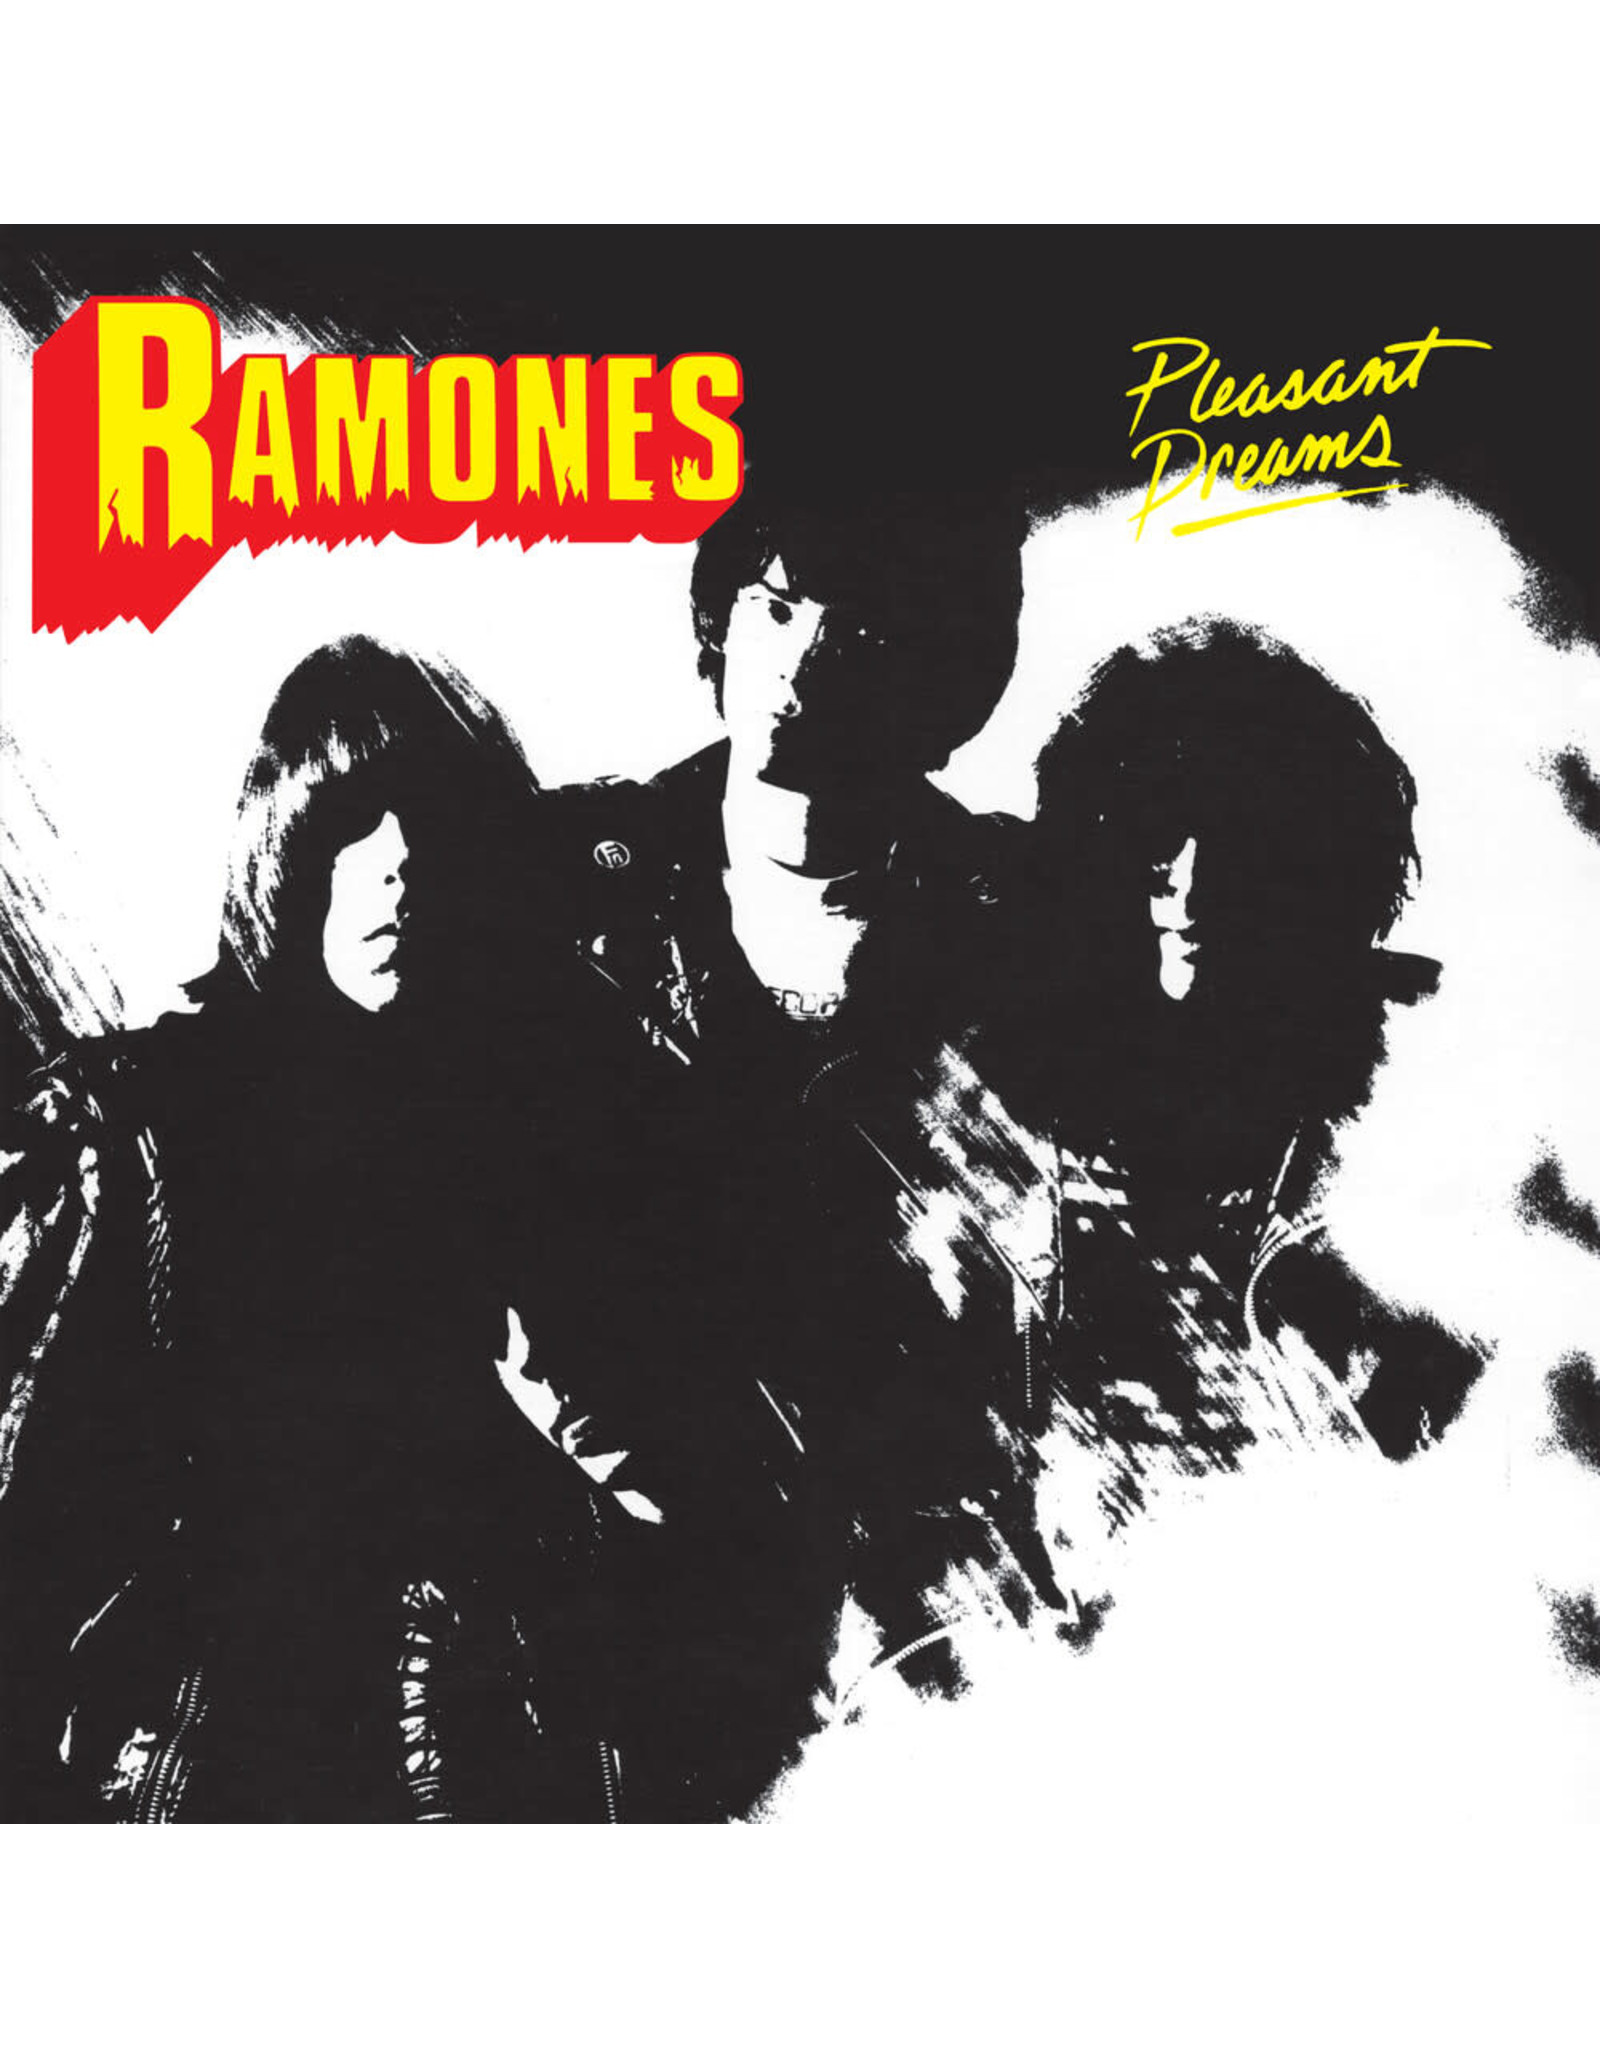 Ramones - Pleasant Dreams (The New York Mixes) [Exclusive Yellow Vinyl]